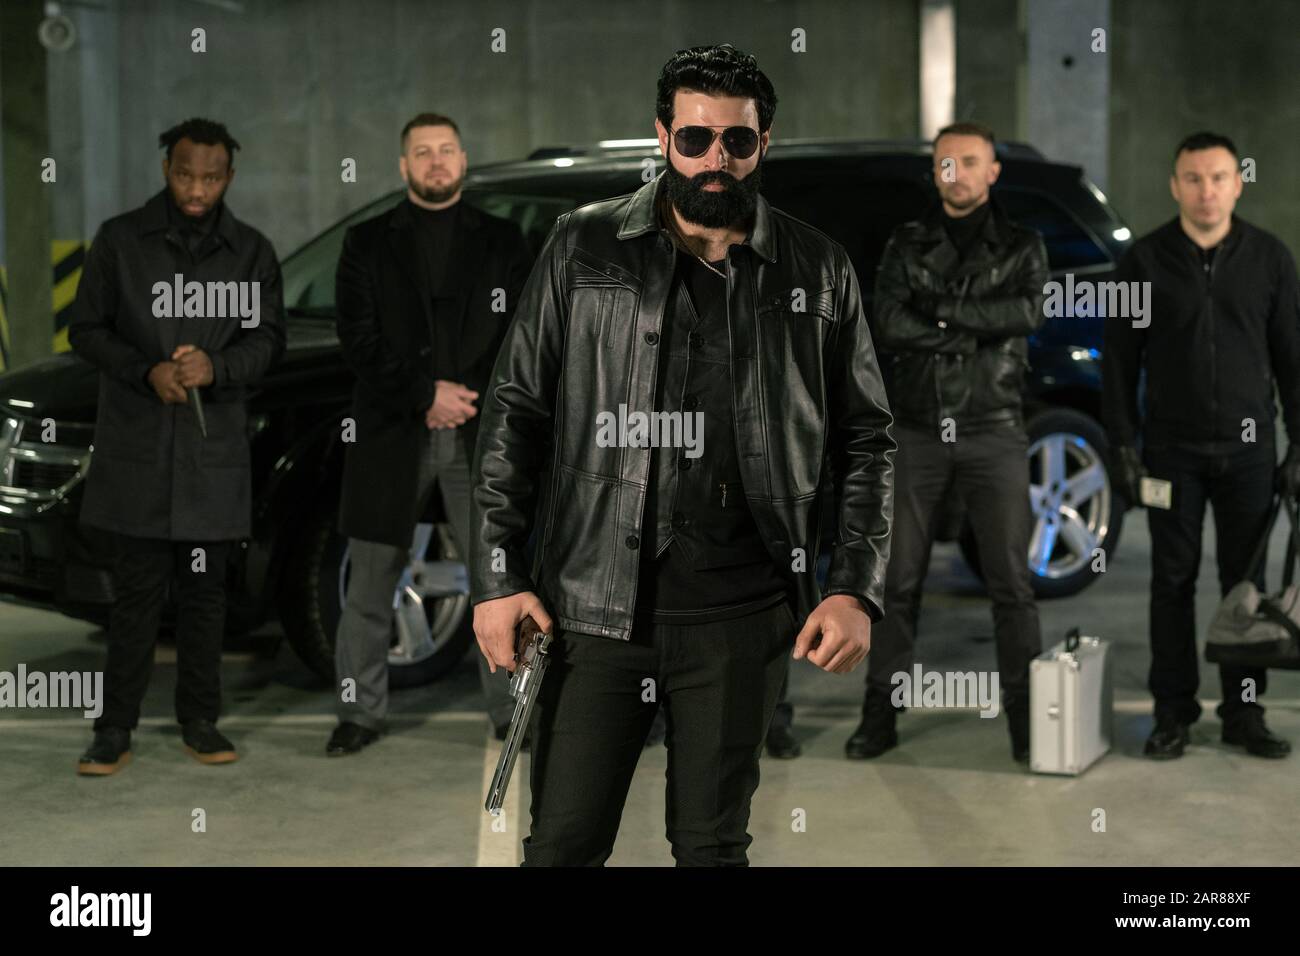 Bärtige Strafvollmacht in Sonnenbrille, schwarzer Lederjacke und Jeans Stockfoto